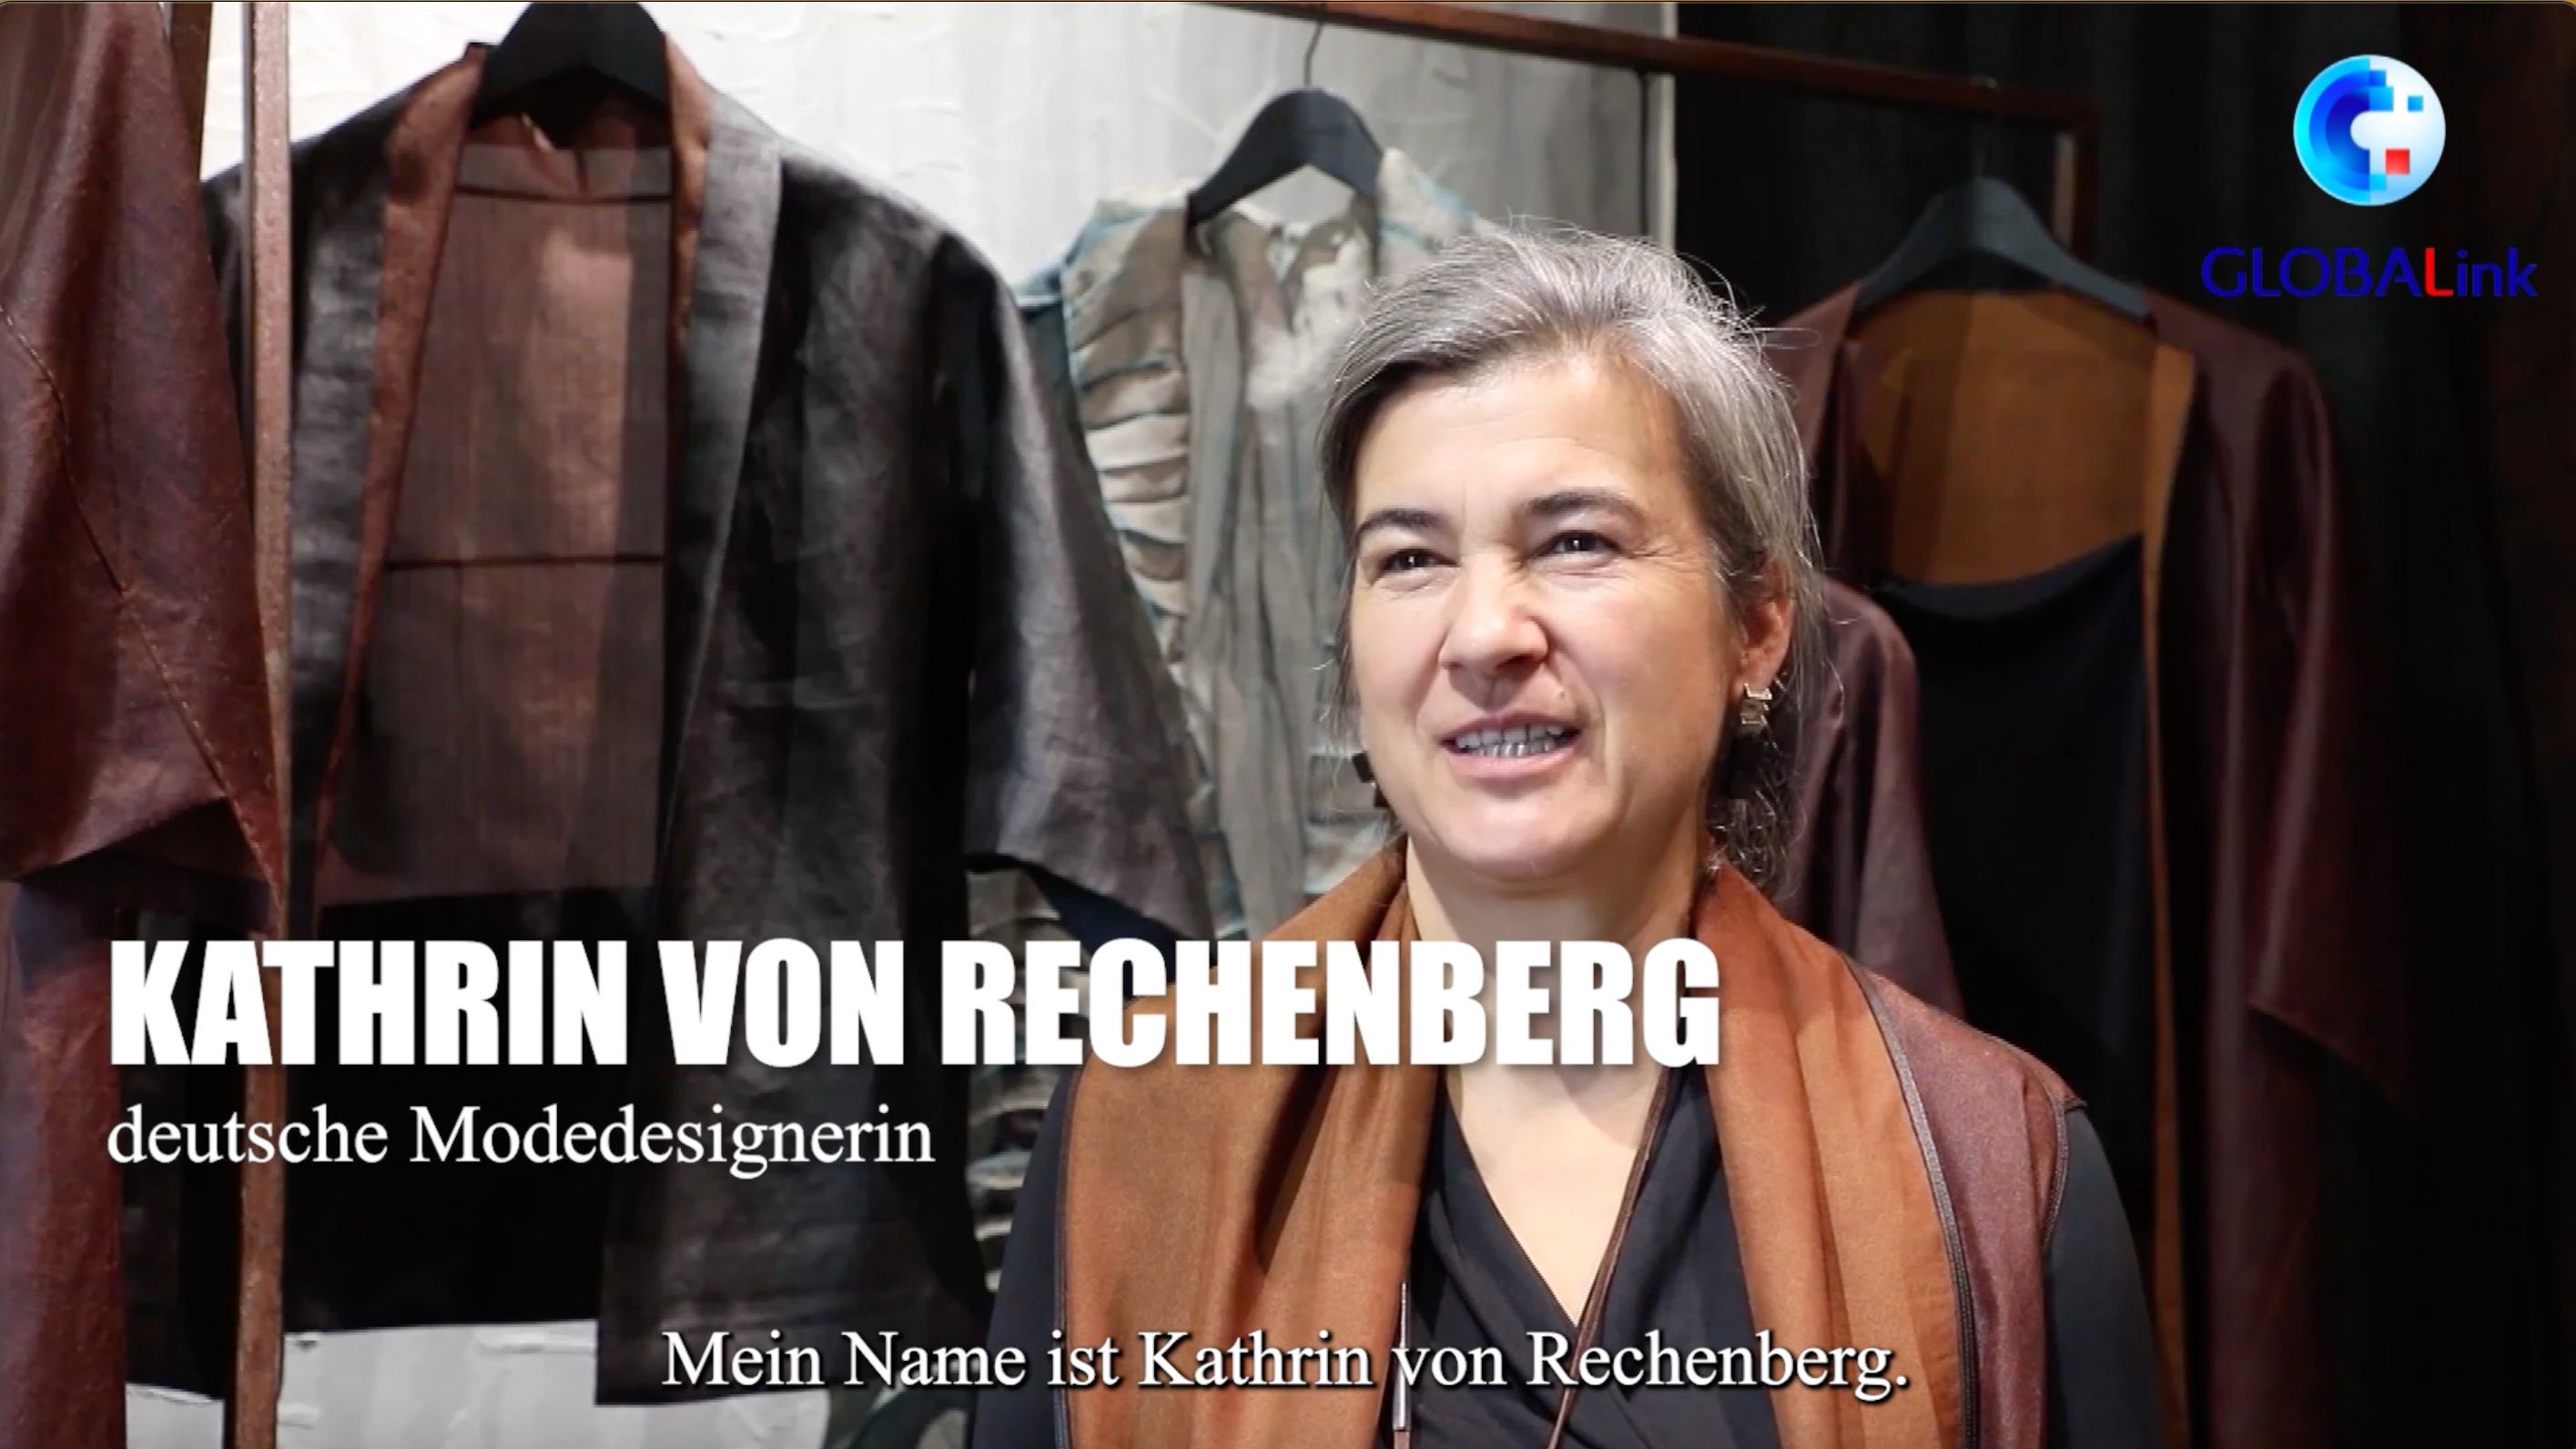 GLOBALink | Die untrennbare Verbindung der deutschen Modedesignerin mit traditioneller chinesischer Seide